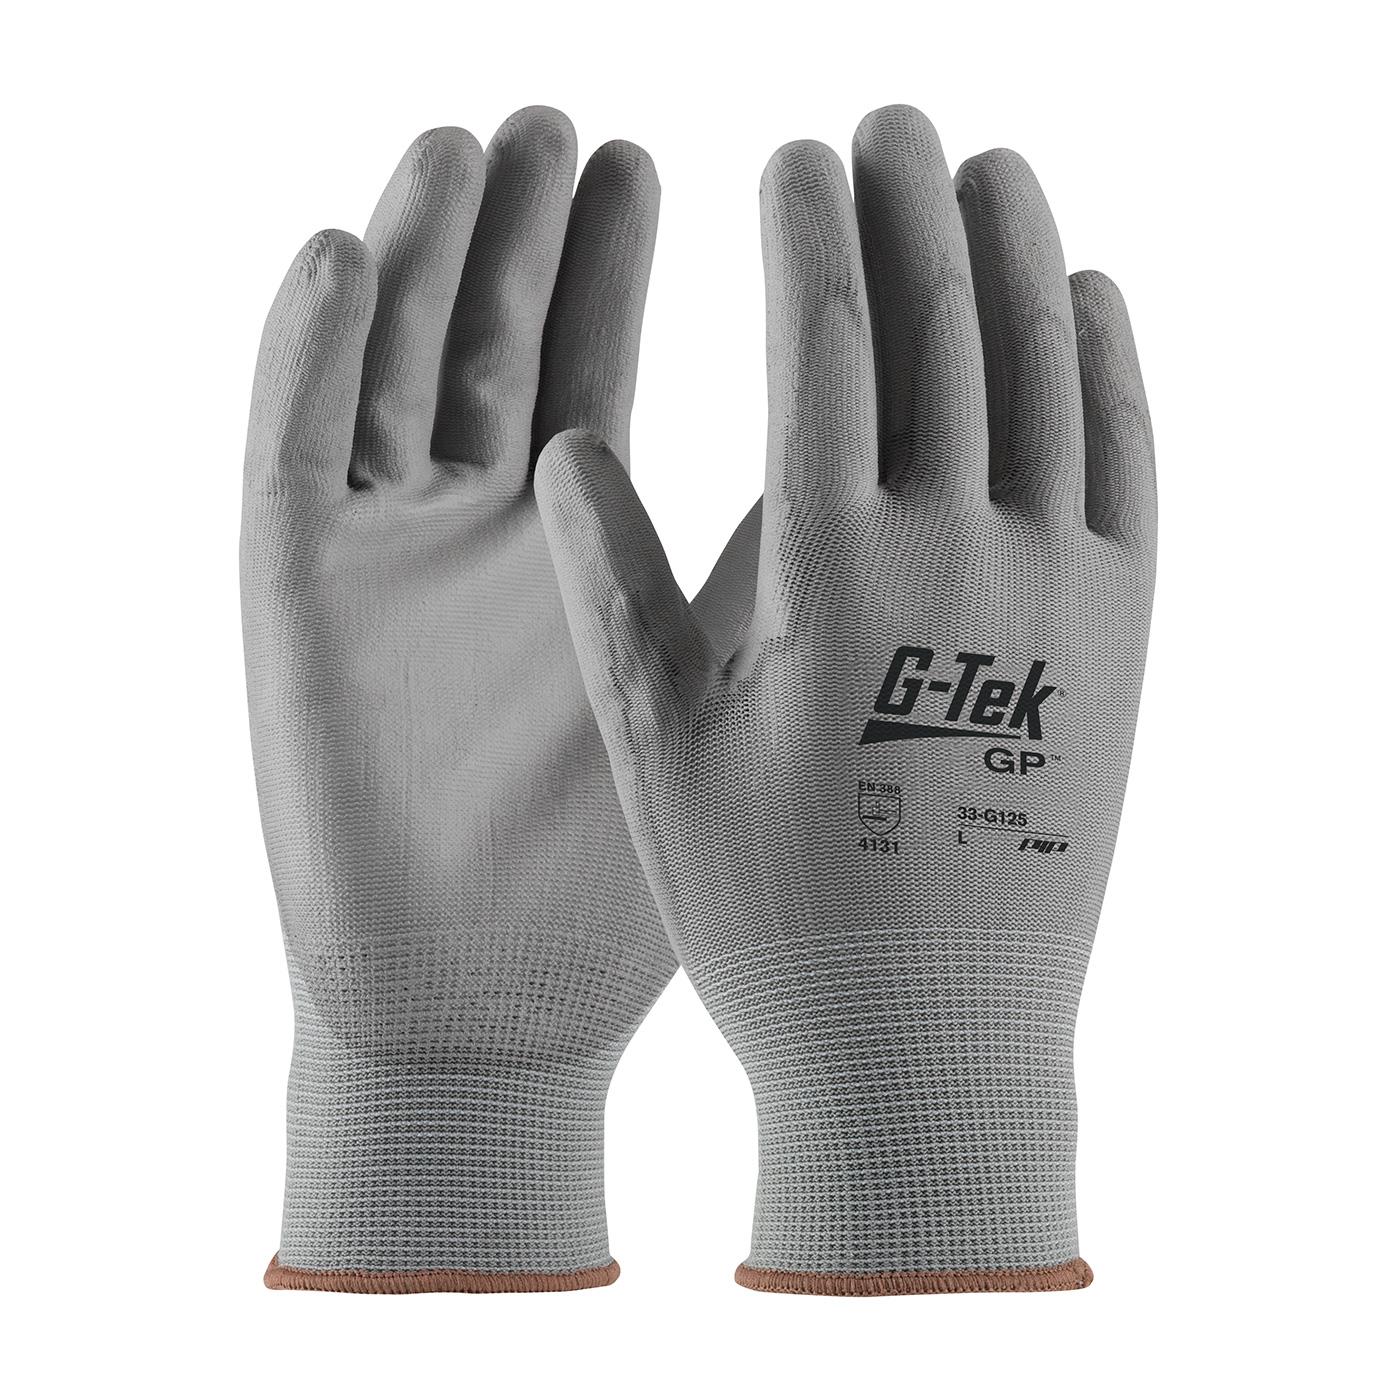 G-TEK NPG GRAY PU PALM COATED NYLON - Polyurethane Coated Gloves